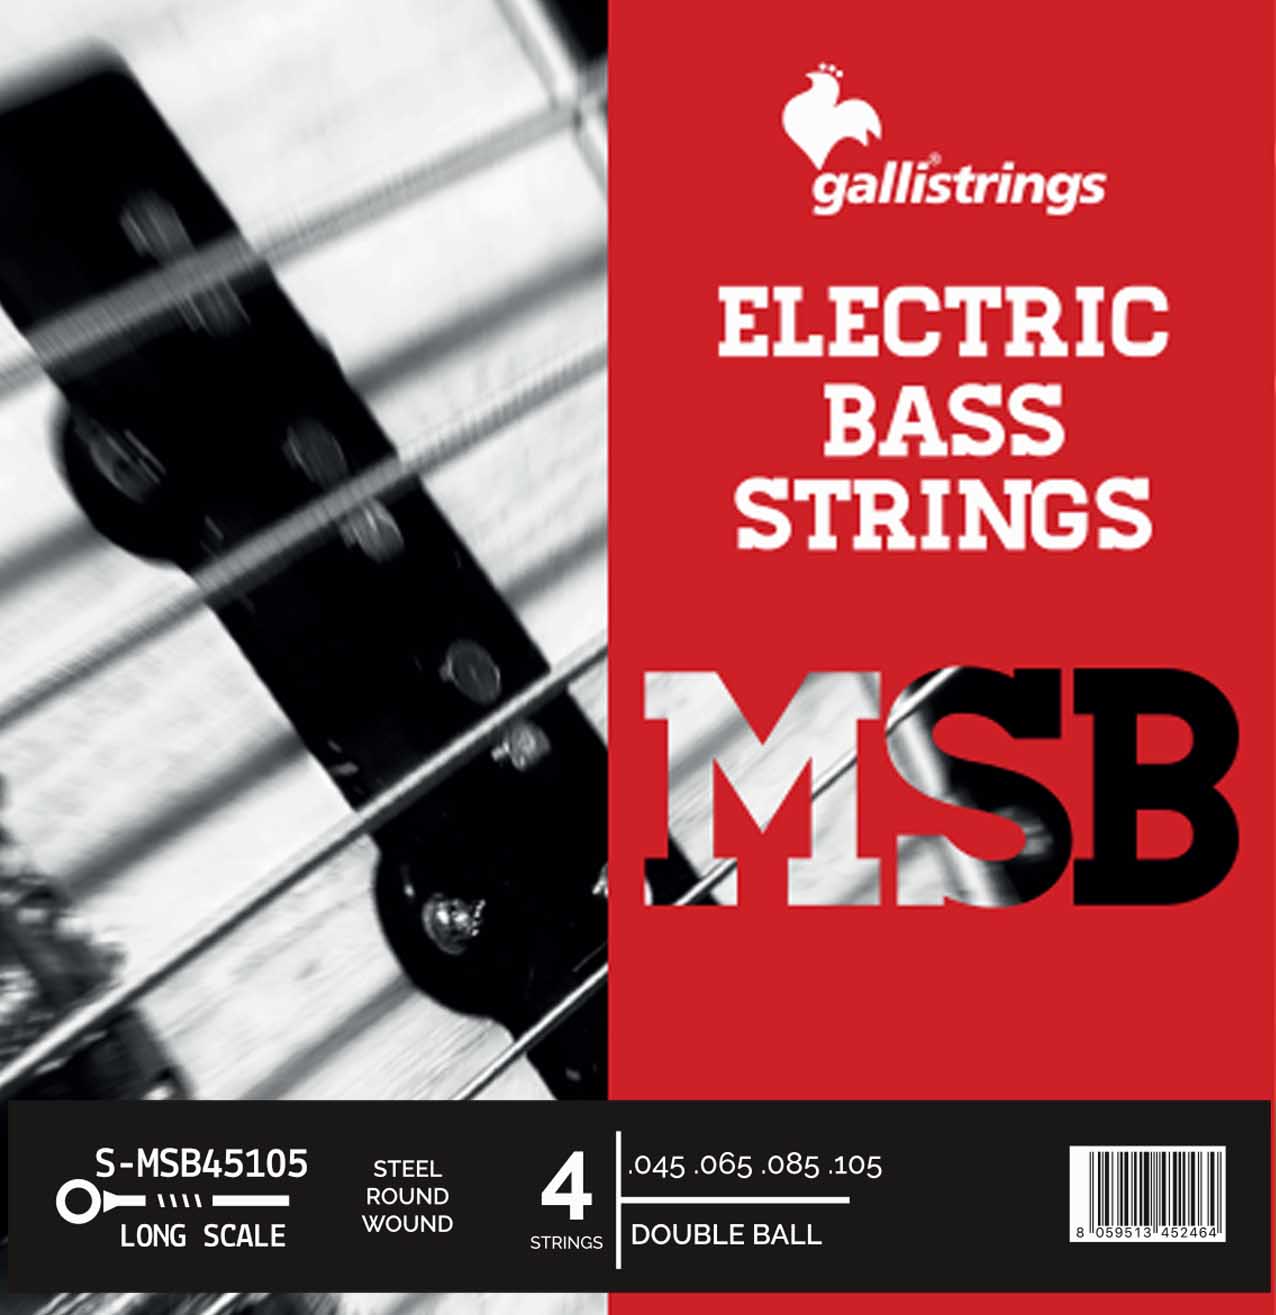 MSB Steel - 4 strings